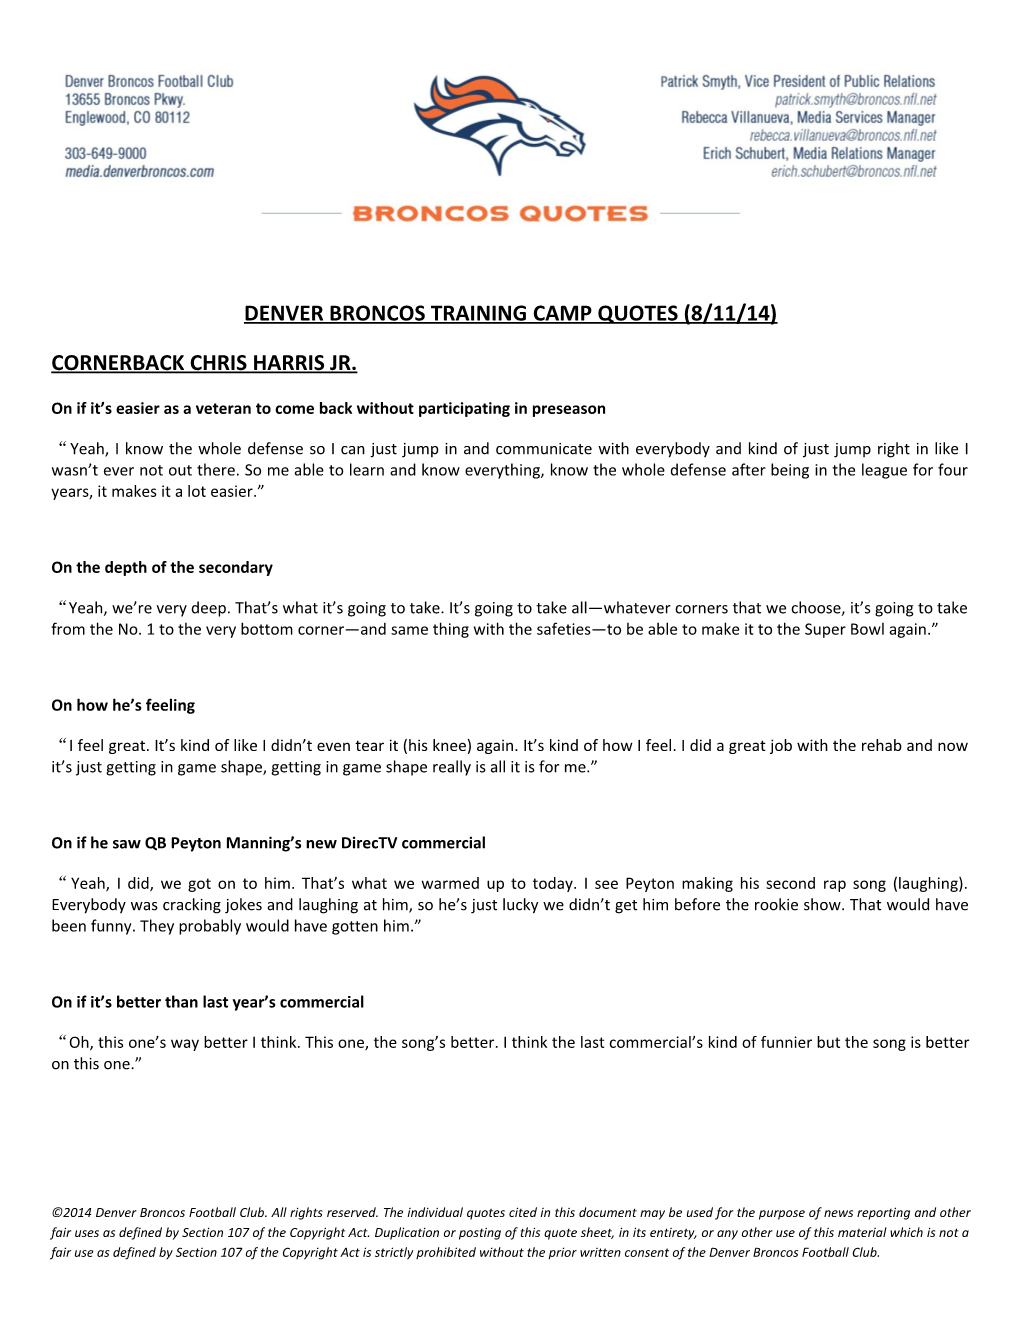 Denver Broncos Training Camp Quotes (8/11/14)